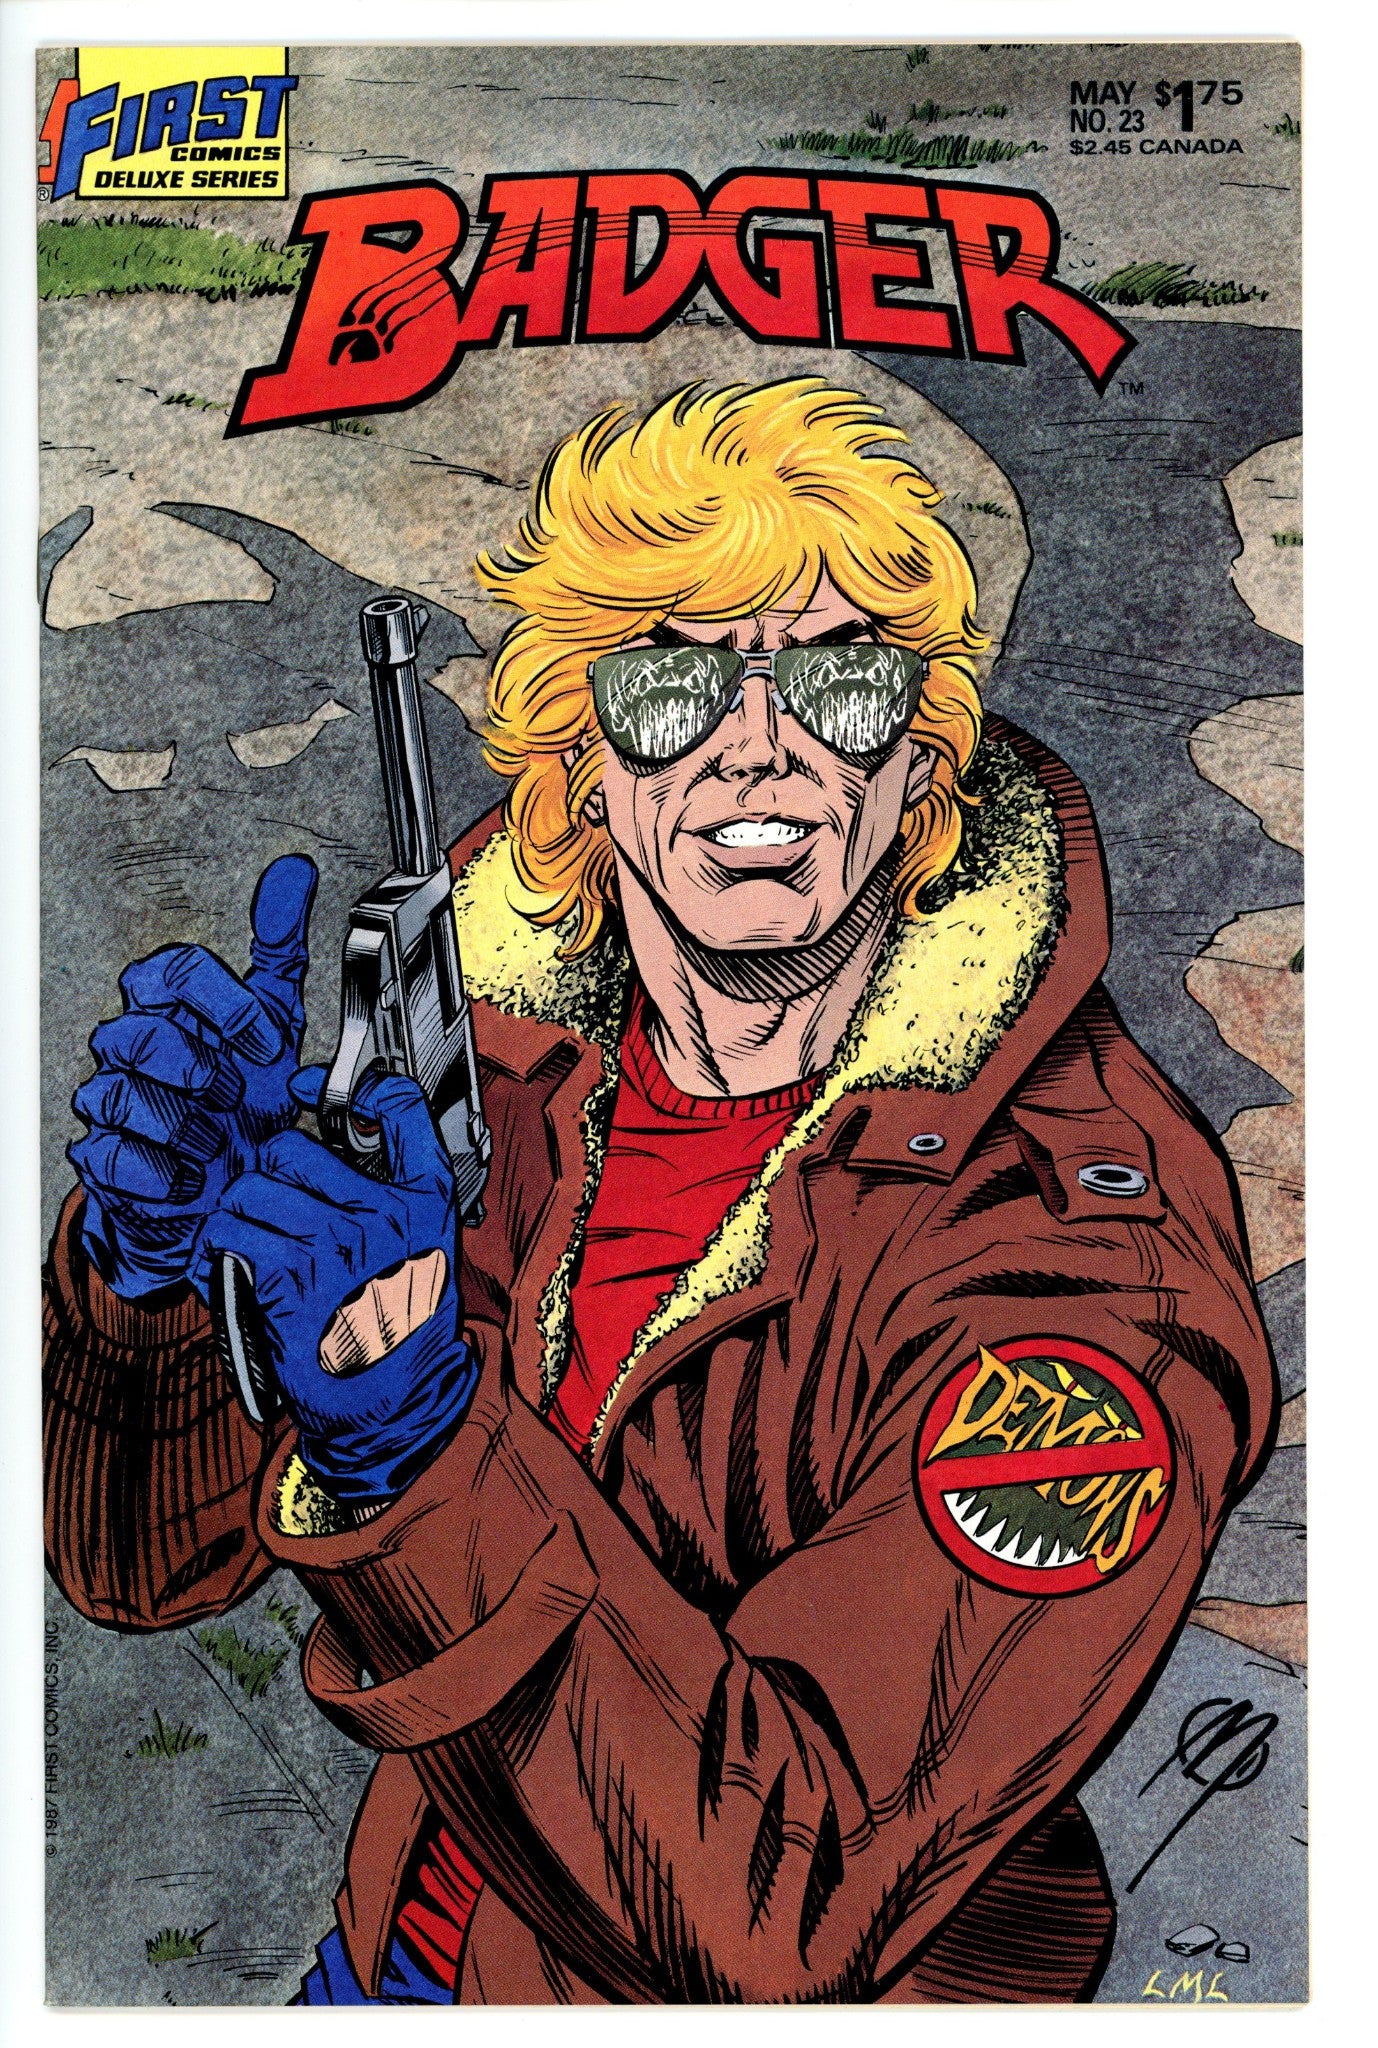 Badger Vol 1 23-First Comics-CaptCan Comics Inc